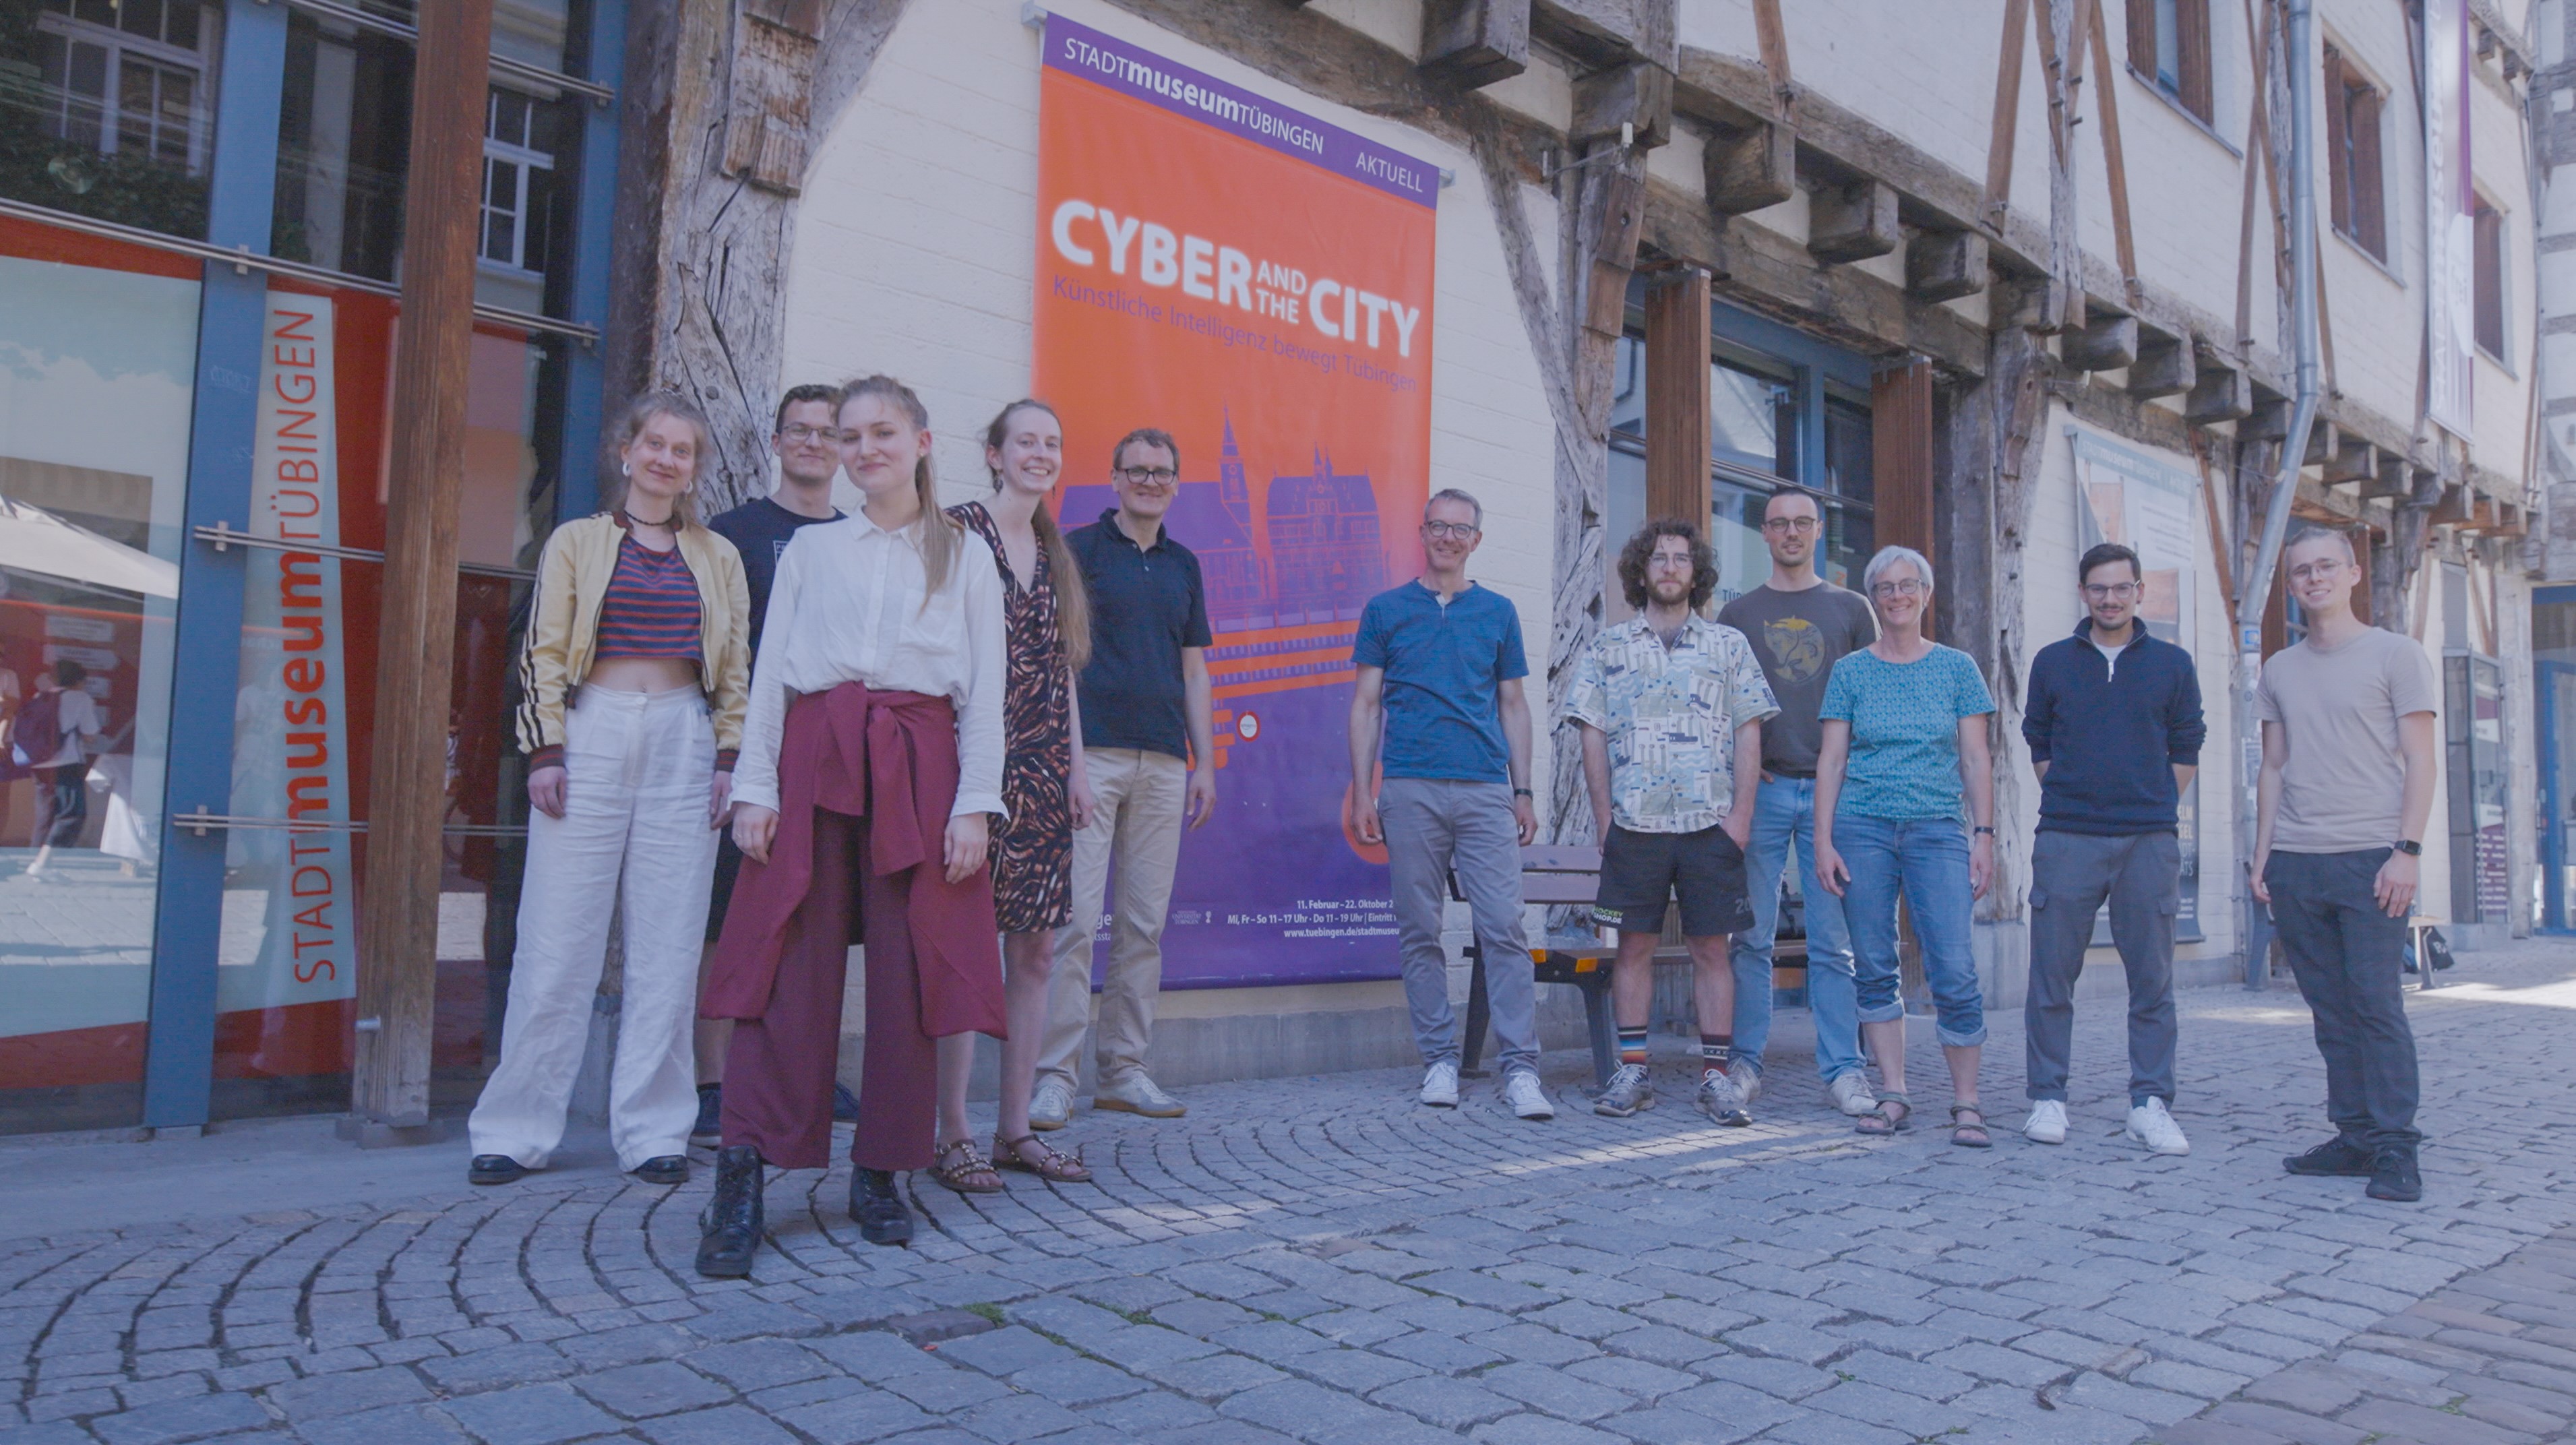 Gruppenbild des Teams "Cyber and the City" mit einem Plakat seiner Ausstellung im Stadtmuseum Tübingen